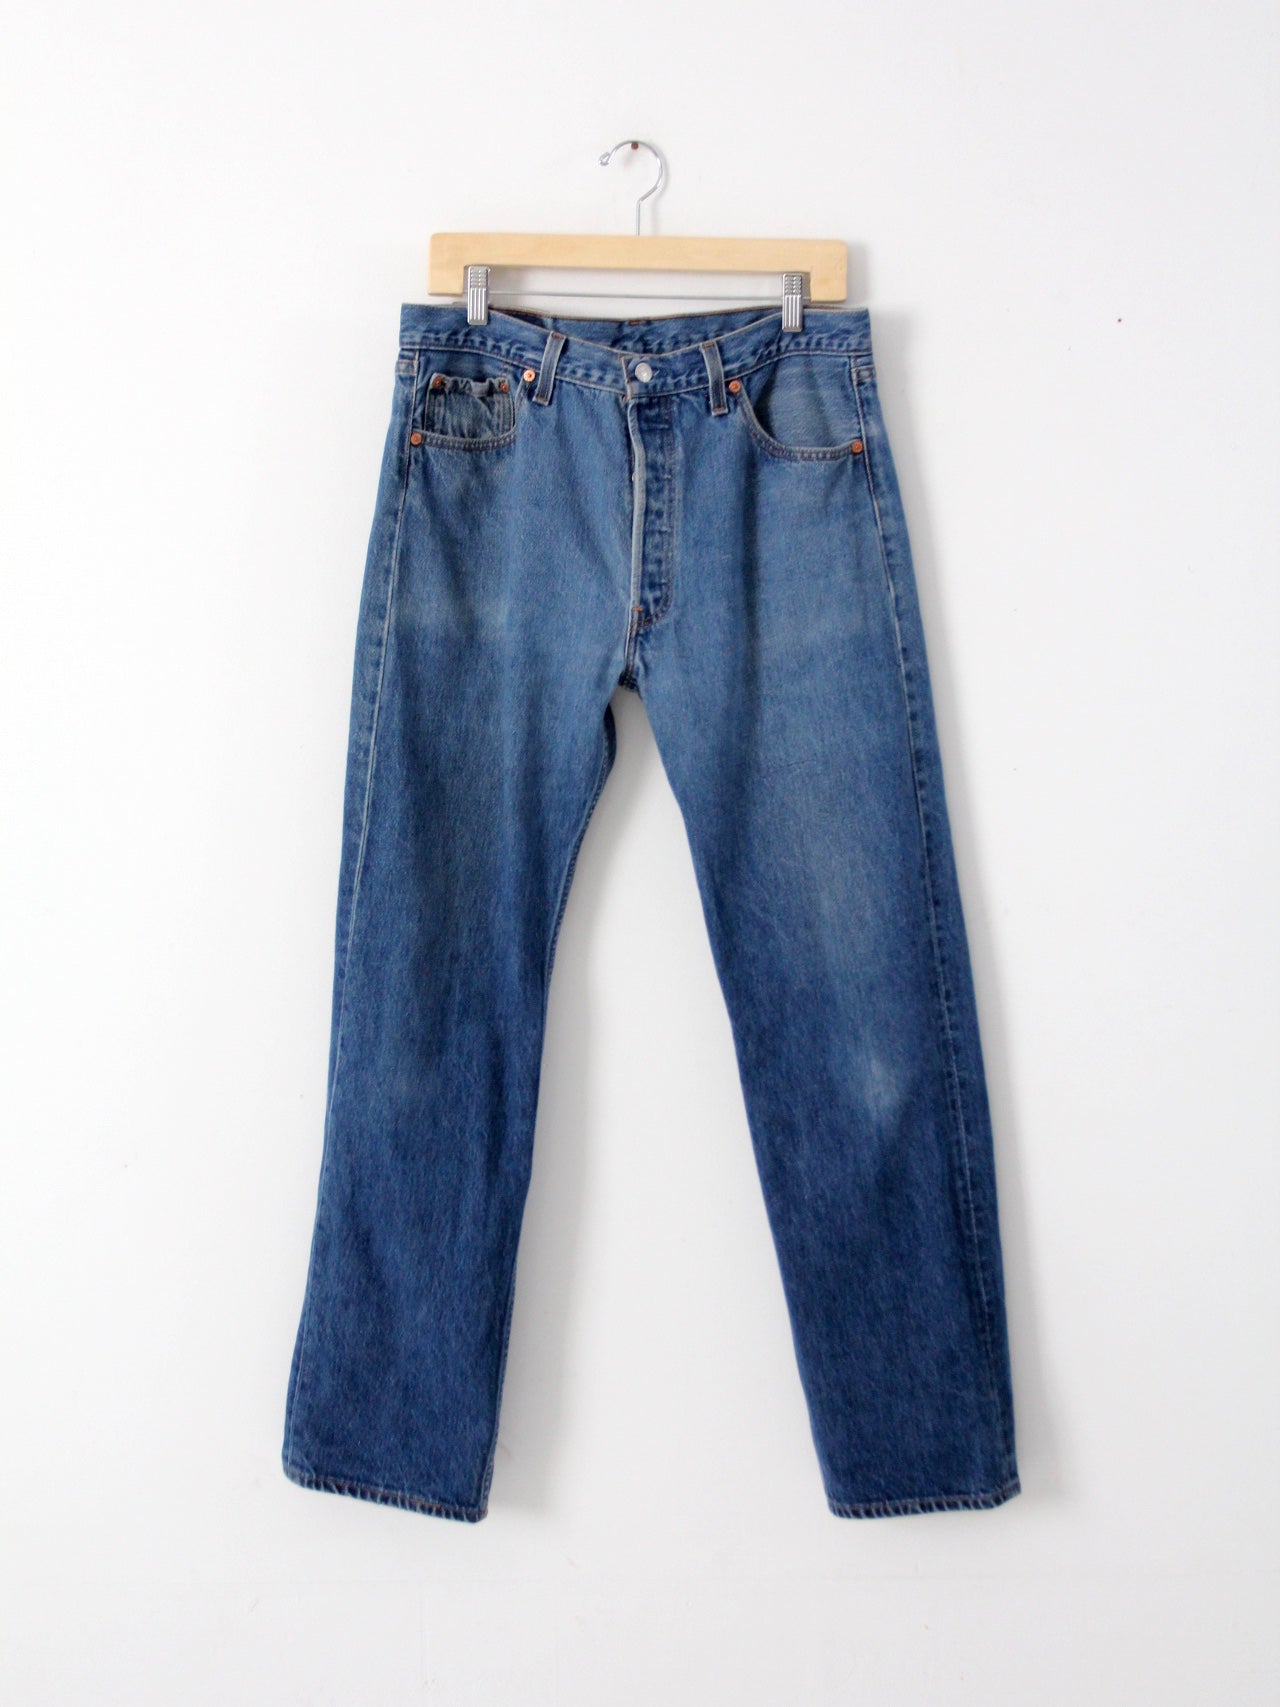 vintage Levis 501xx jeans, 34 x 31 – 86 Vintage